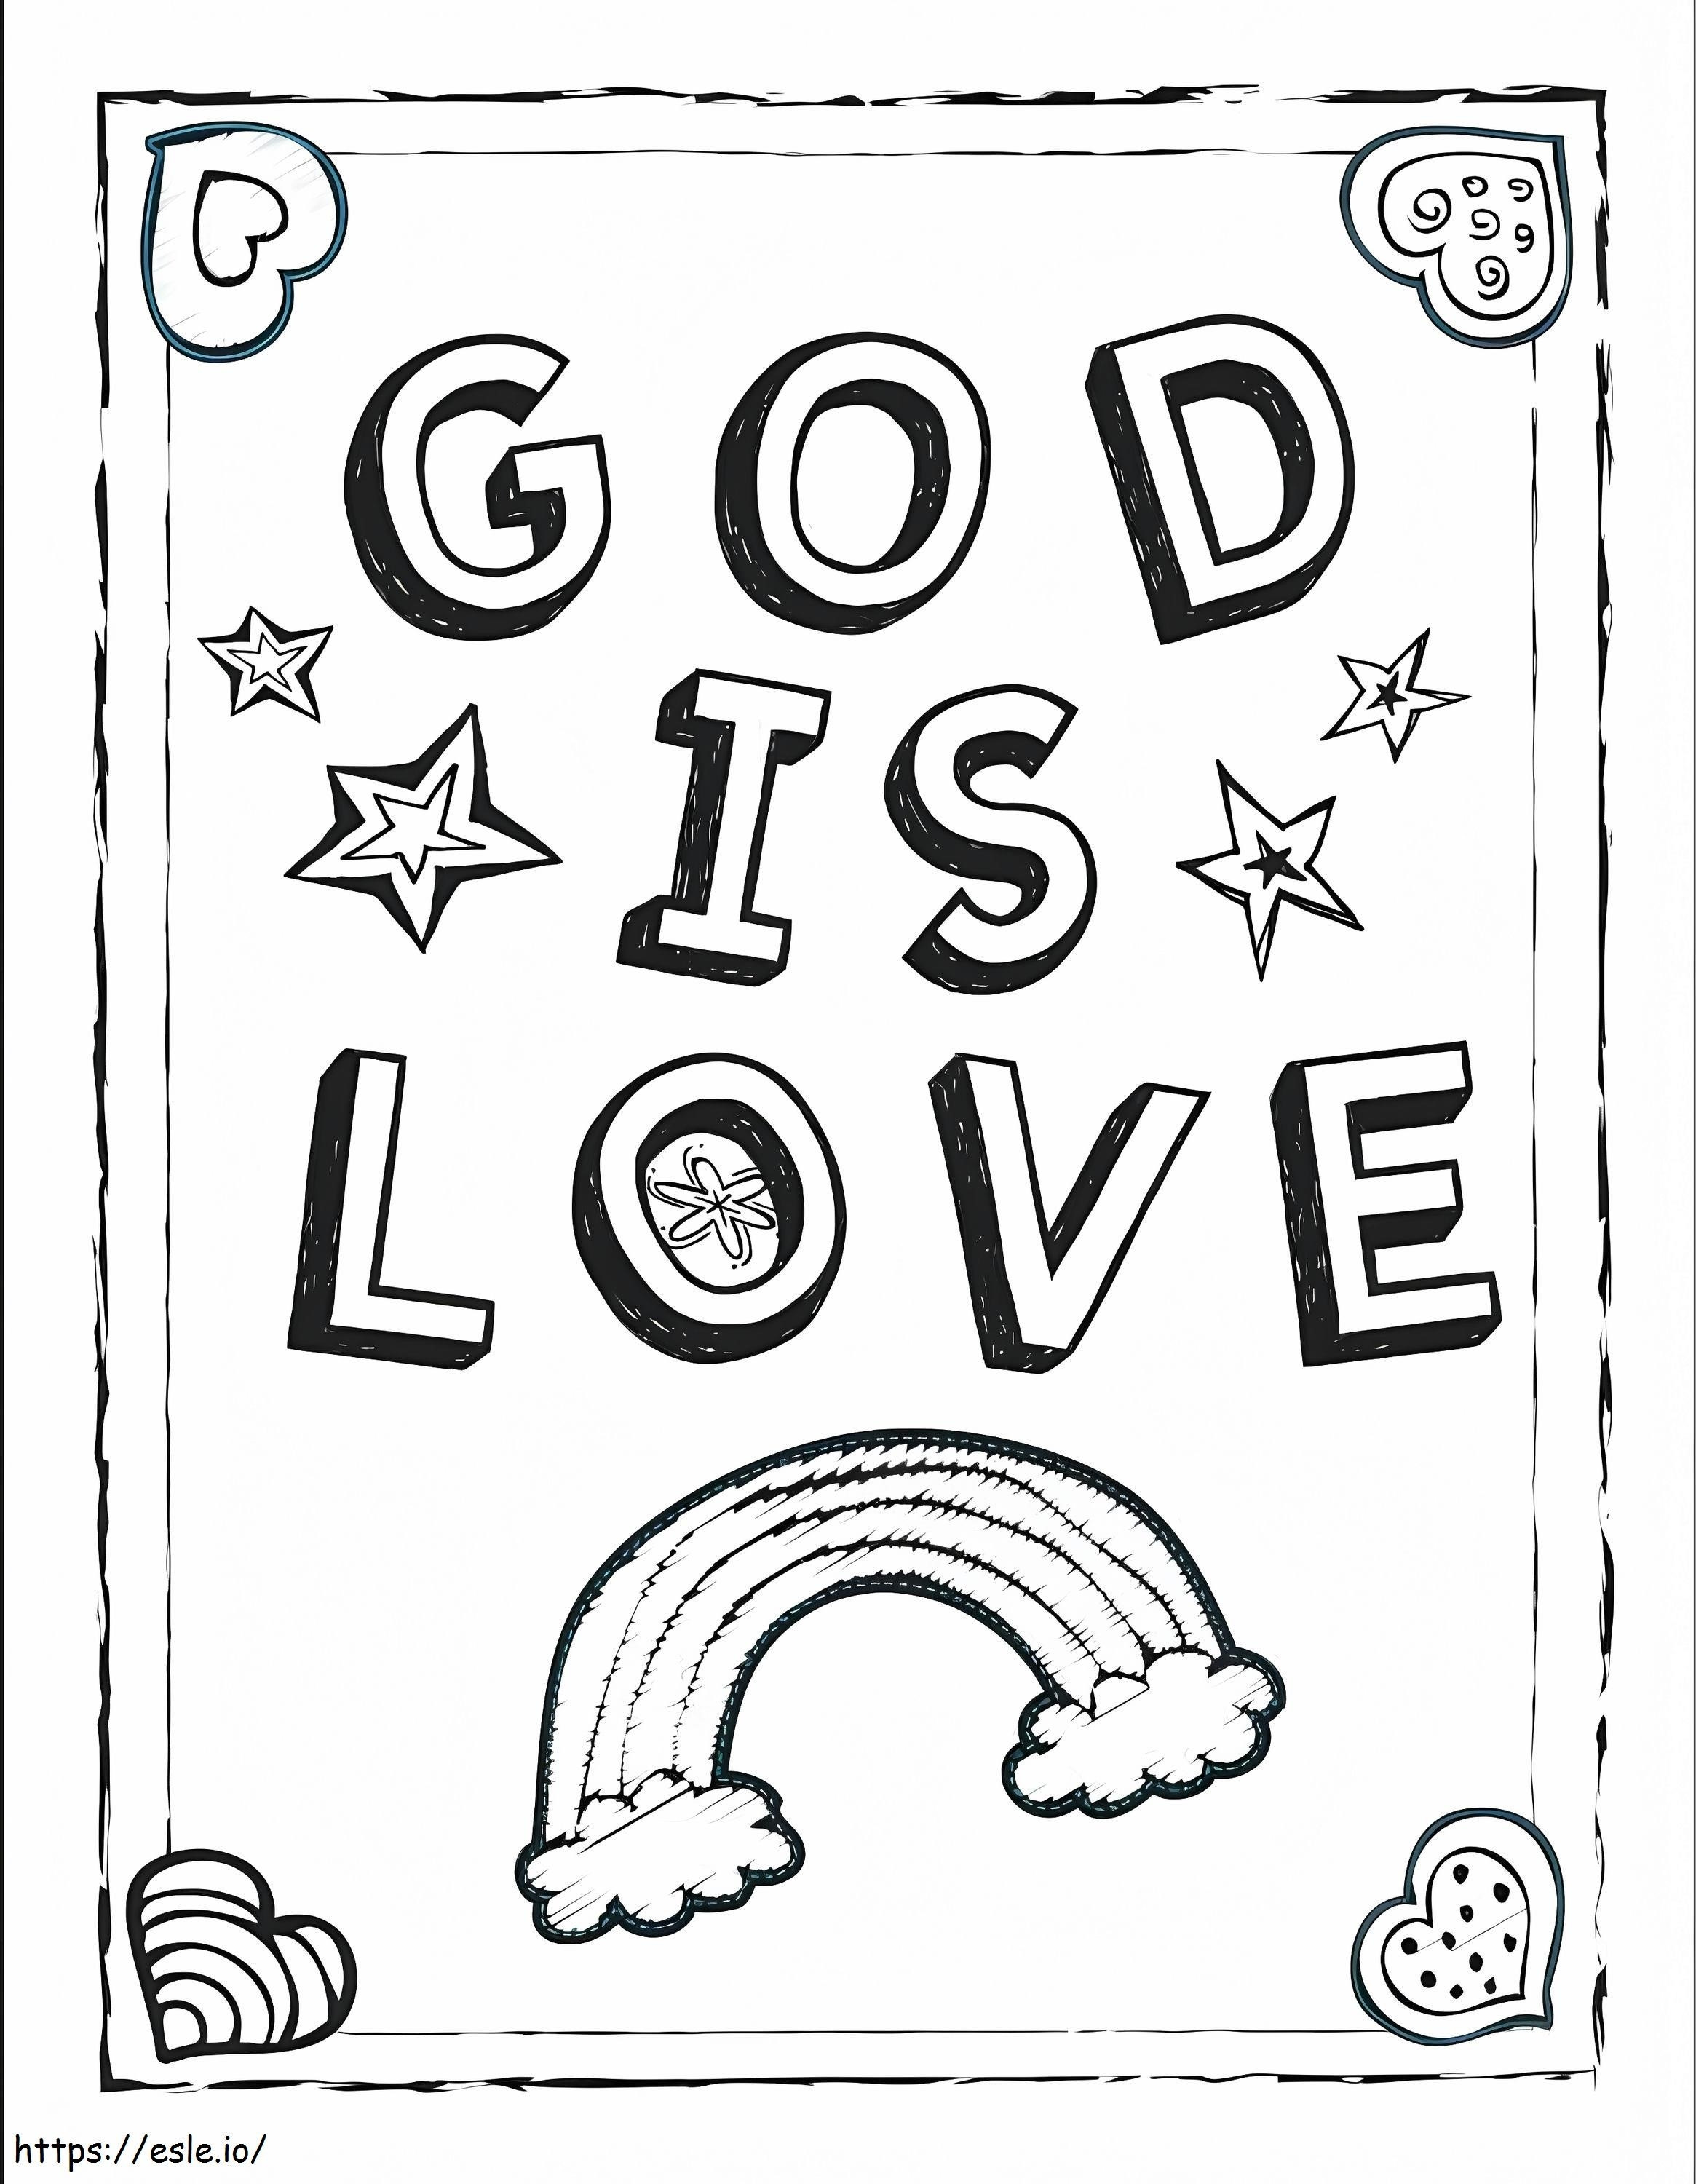 Tanrı aşktır boyama